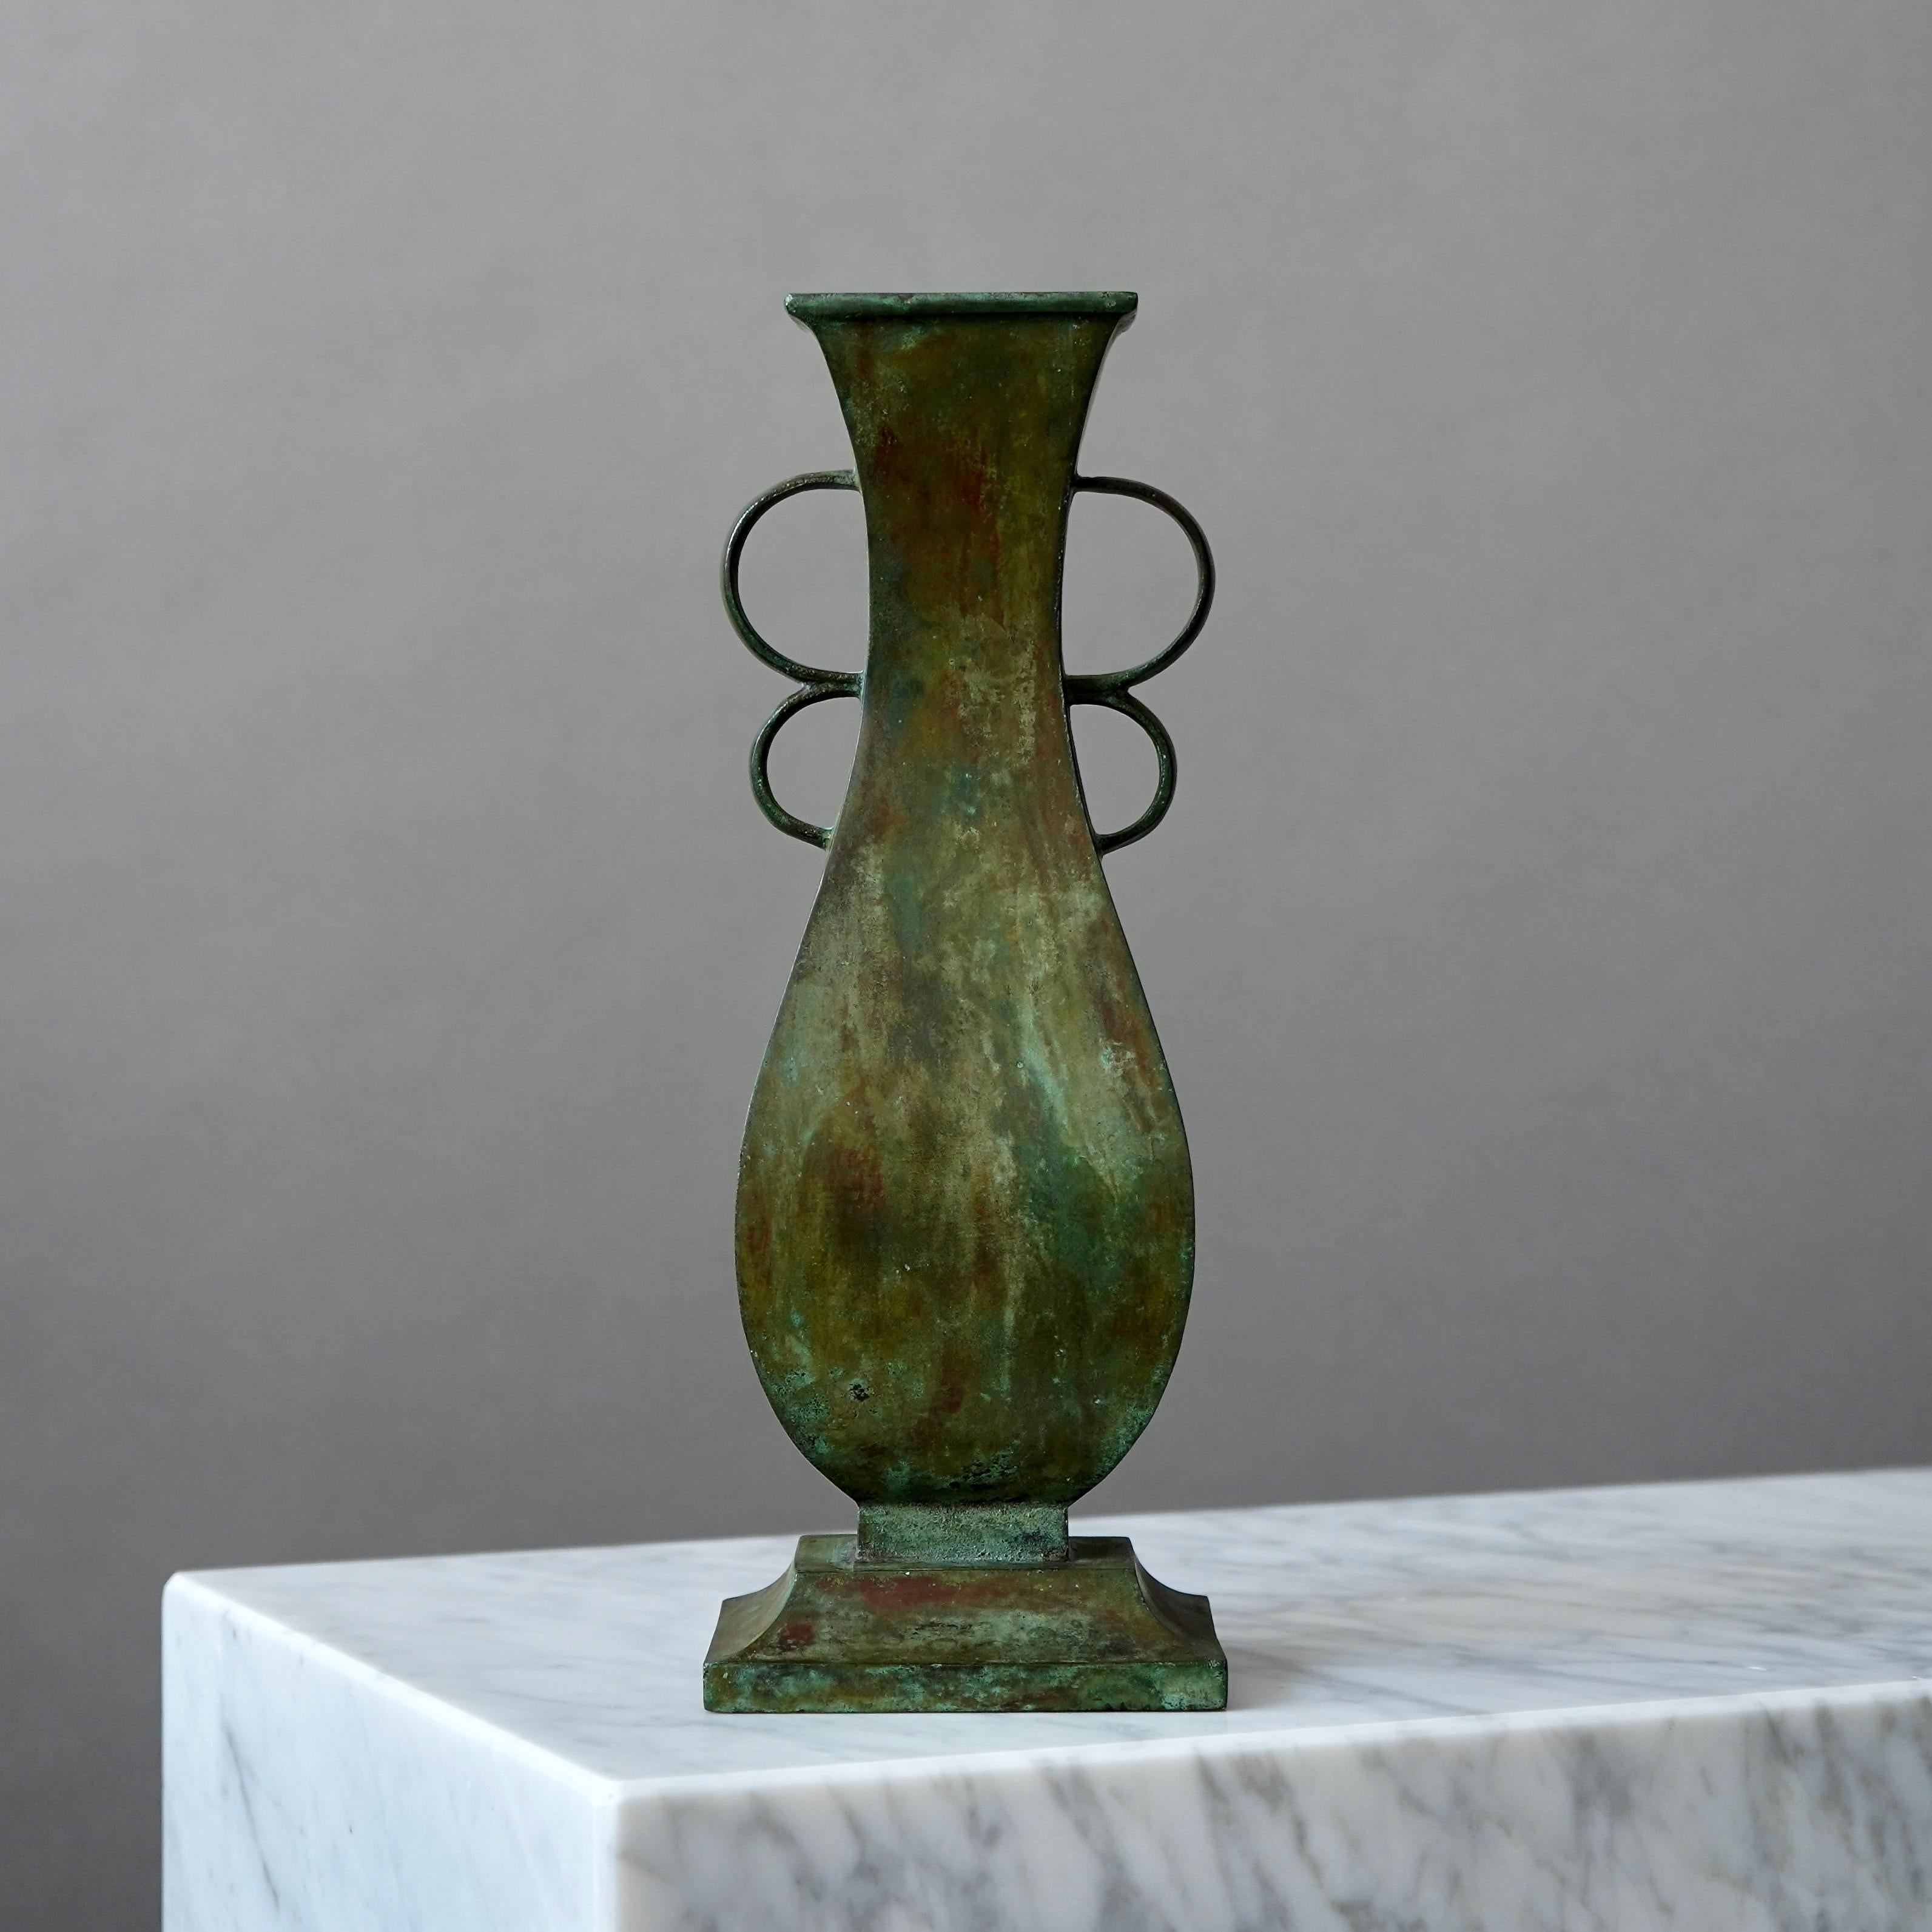 Un grand et beau vase en bronze avec une patine étonnante. Conçu par Sune Bäckström à Malmoe, en Suède, dans les années 1920.  

Excellent état.
Estampillé 